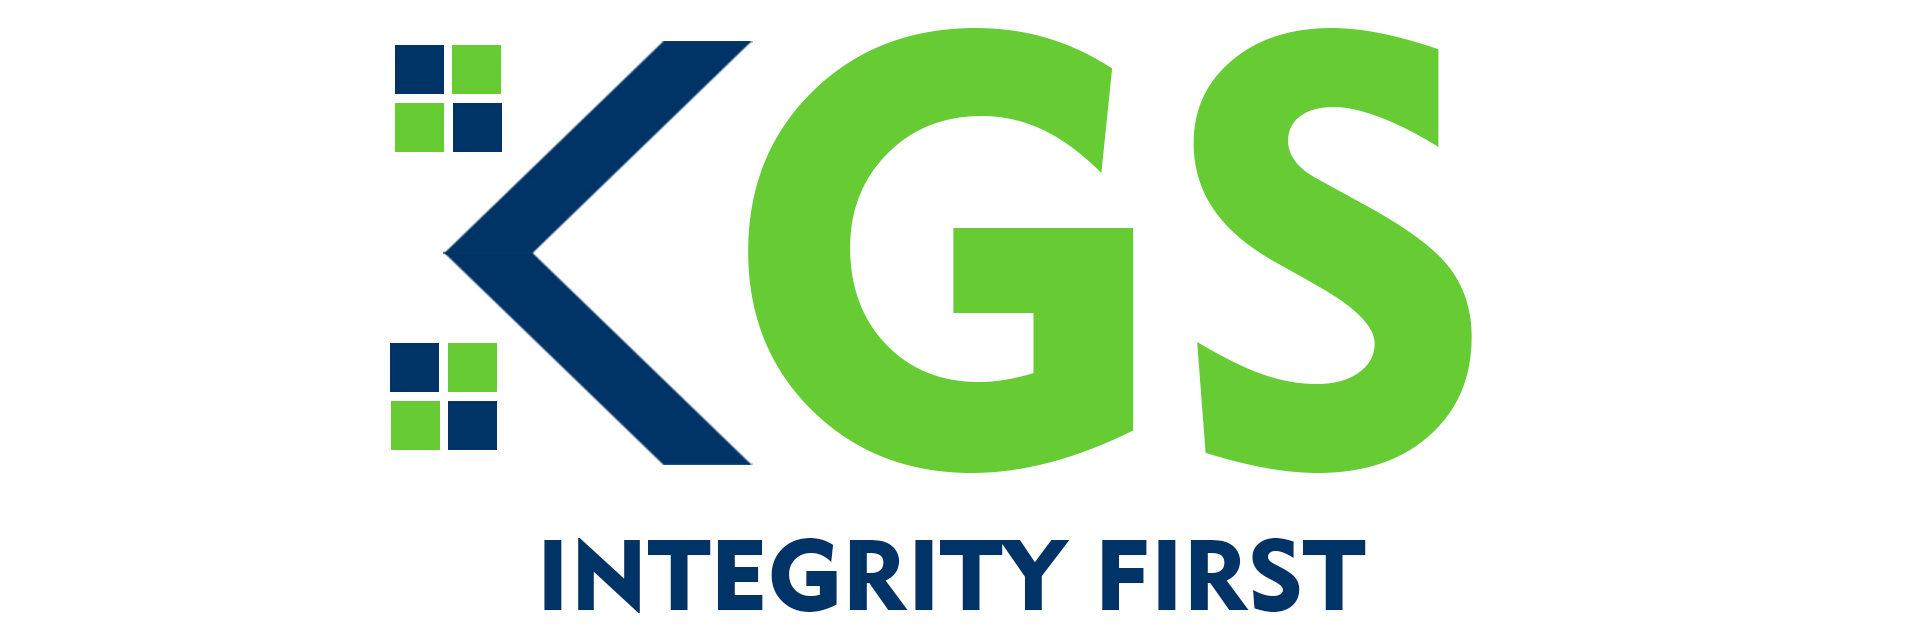 Kgs Logo - KG Somani